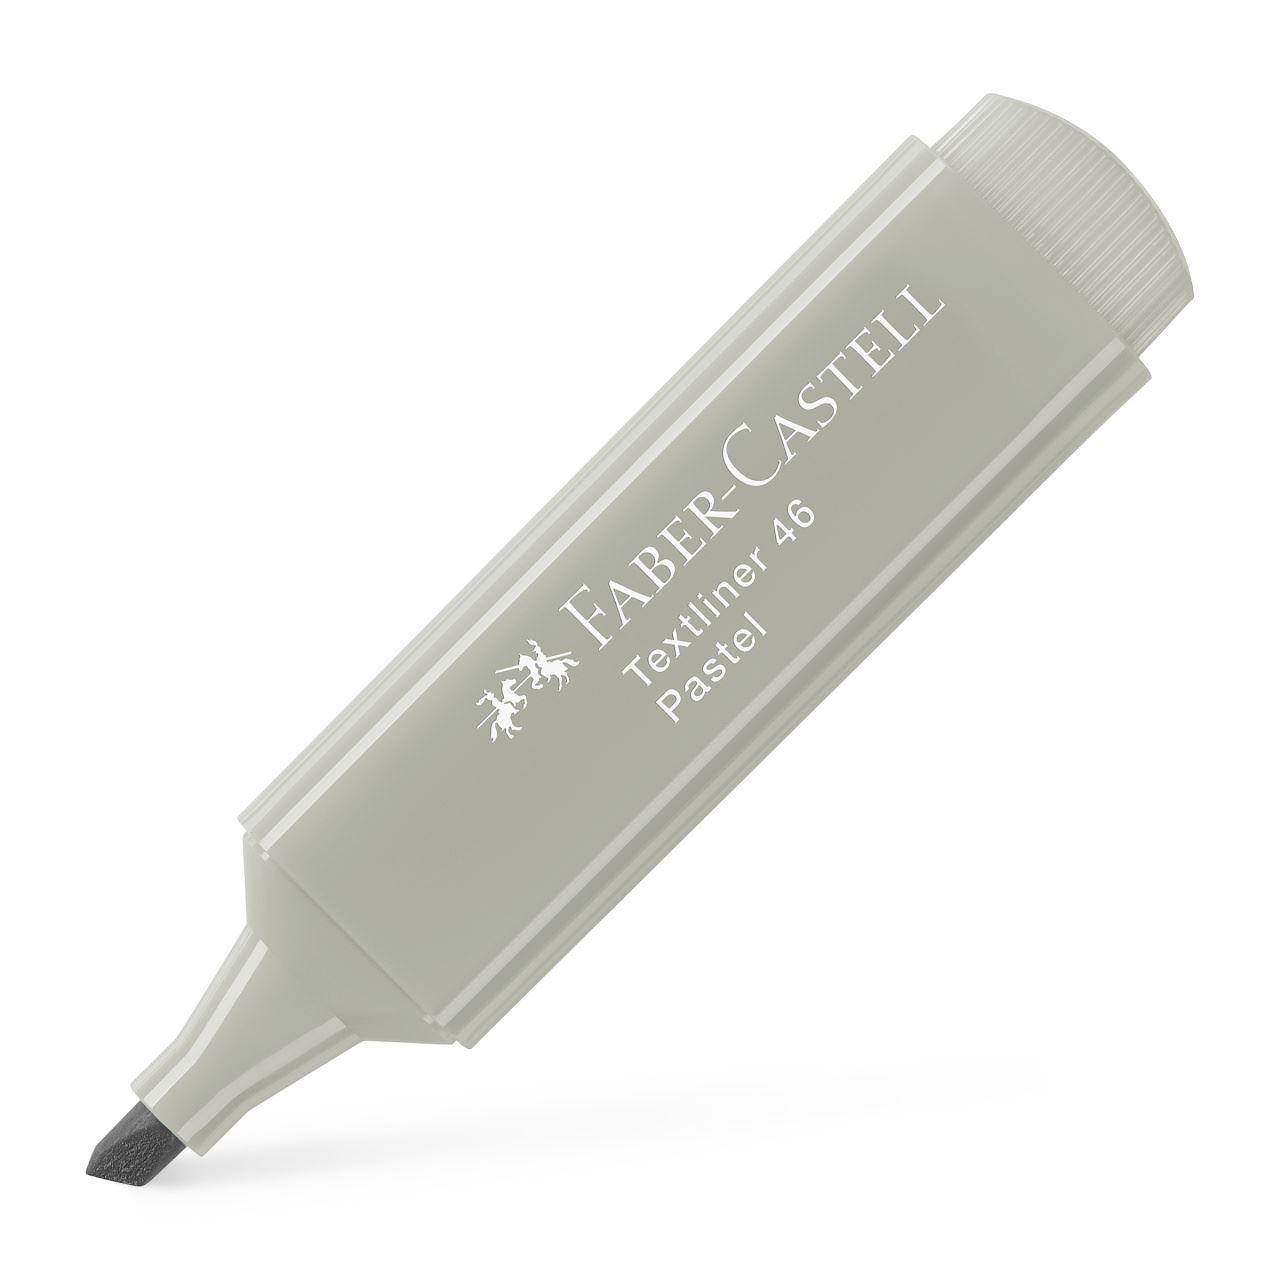 Faber-Castell - Zvýrazňovač Textliner 46 Pastel, šedá